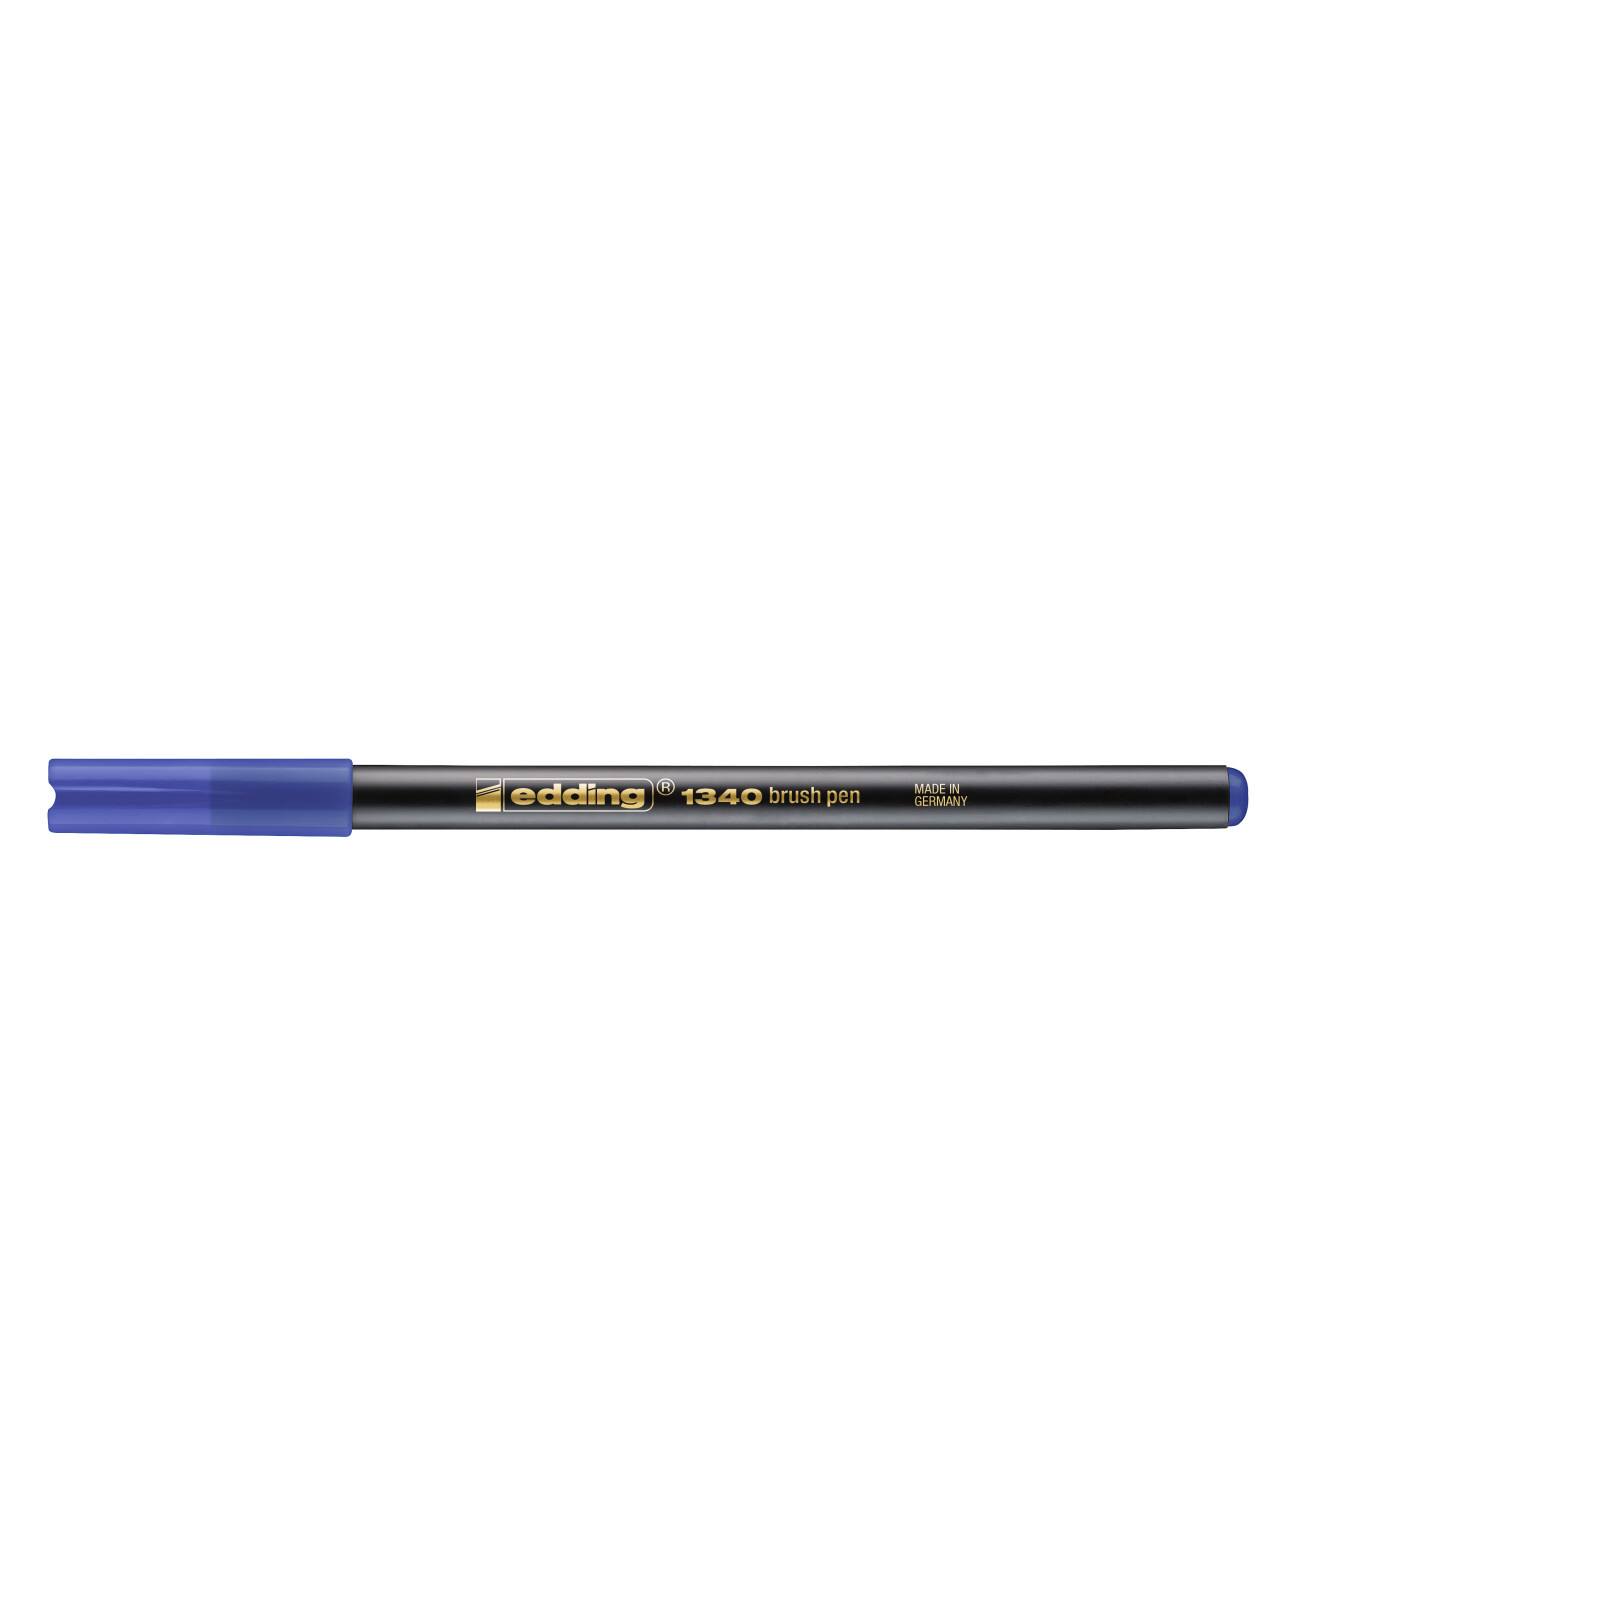 Huichelaar Bestuurbaar Mount Bank Edding® 1340 Brush Pen | Michaels